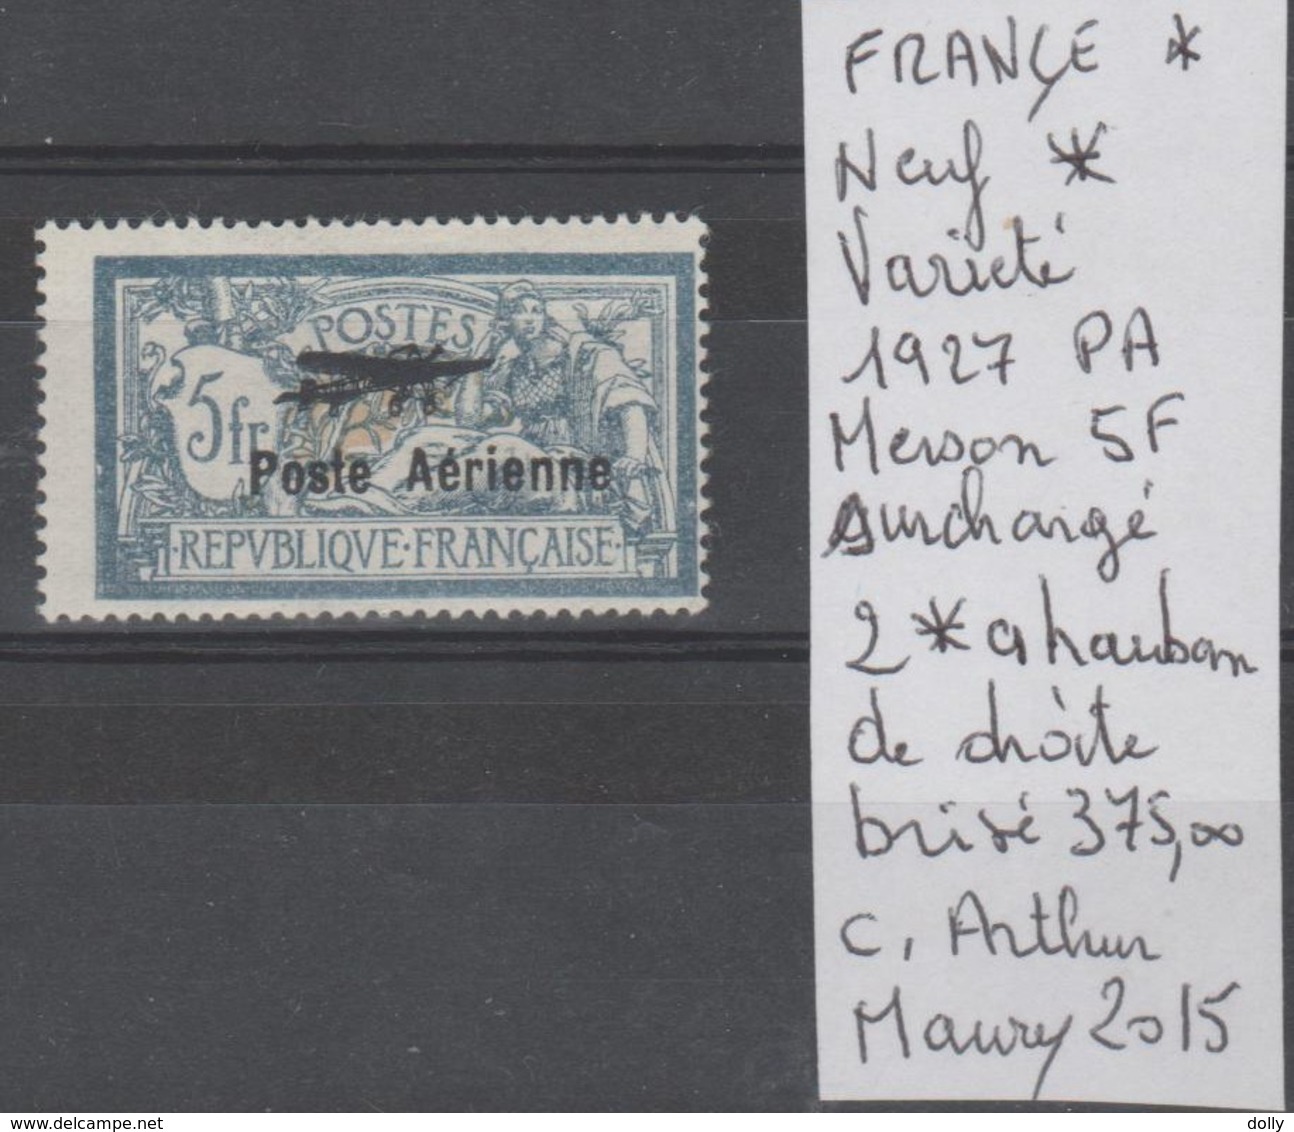 TIMBRES DE FRANCE VARIETE POSTE AERIENNE 1927 Nr 2* A = HAUBAN DE DROITE BRISÈ  COTE 375  € - 1927-1959 Mint/hinged